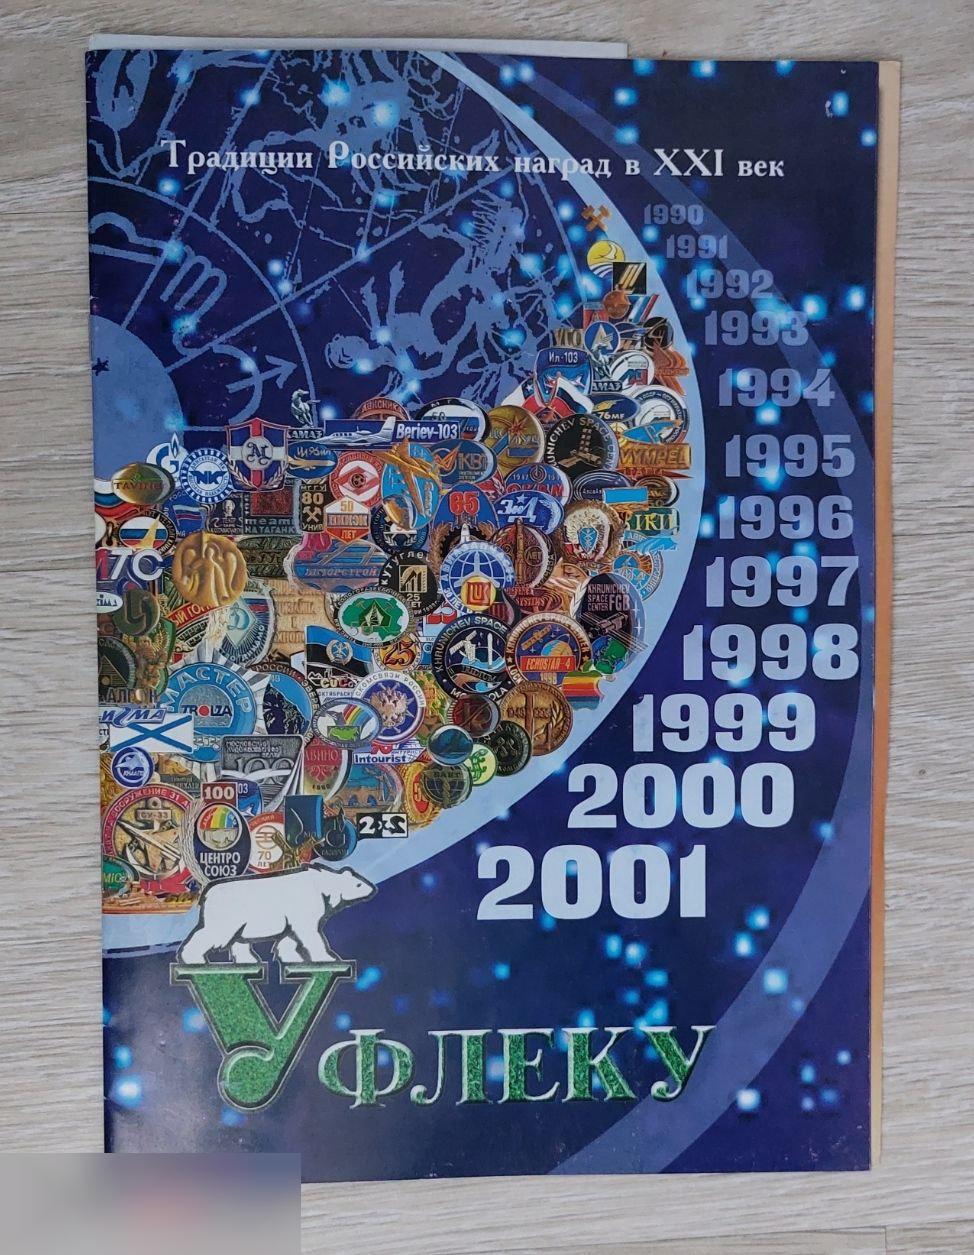 Справочник, Каталог, Уфлеку, Традиции Российских Наград, 2001 год, Москва, 16 страниц + вкладыш